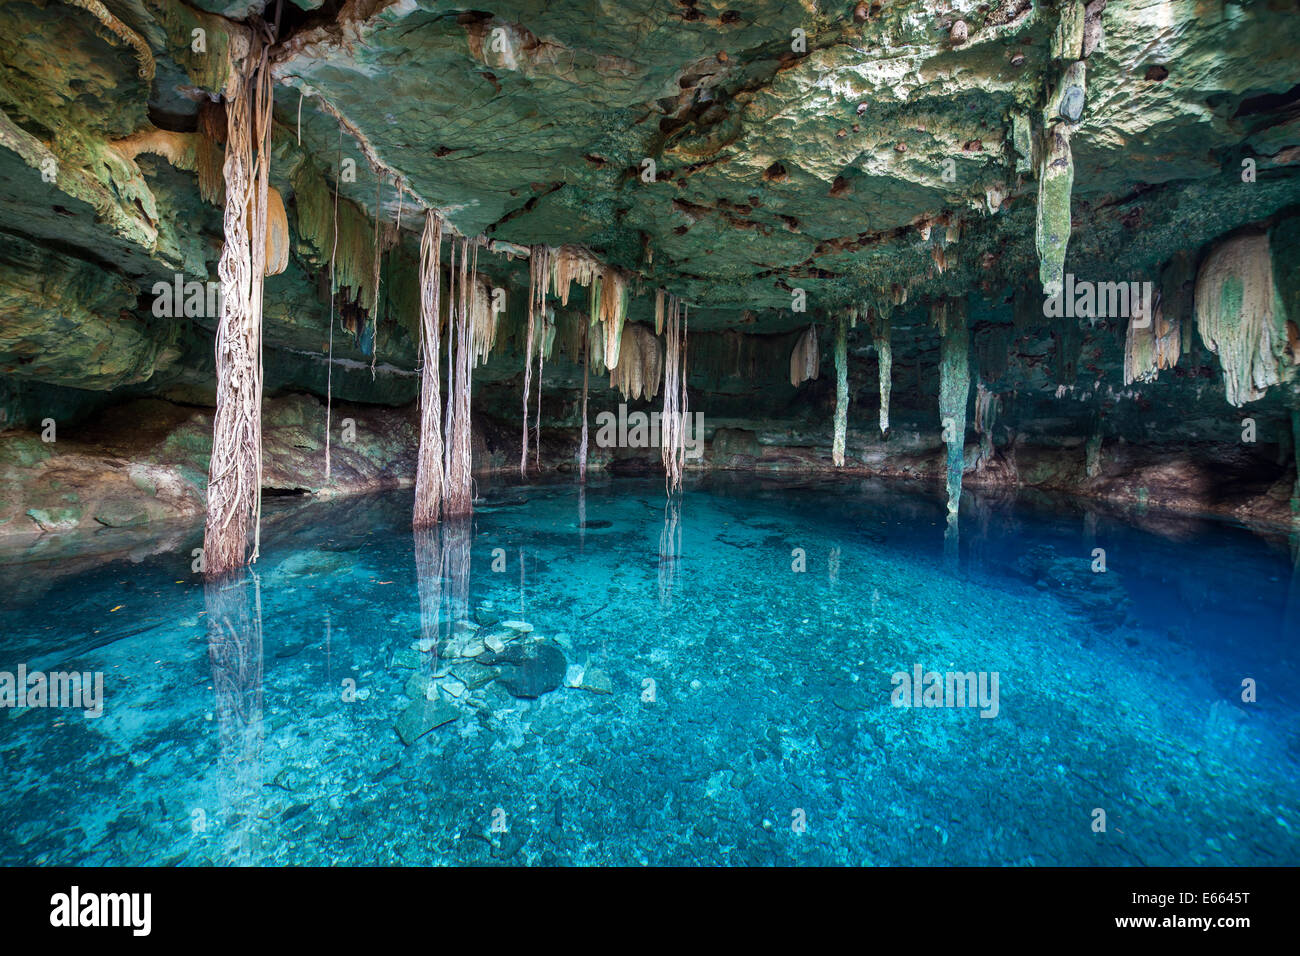 Ingresso al Kankirixche cenote che continua la metropolitana per diverse centinaia di metri, Yucatan, Messico. Foto Stock